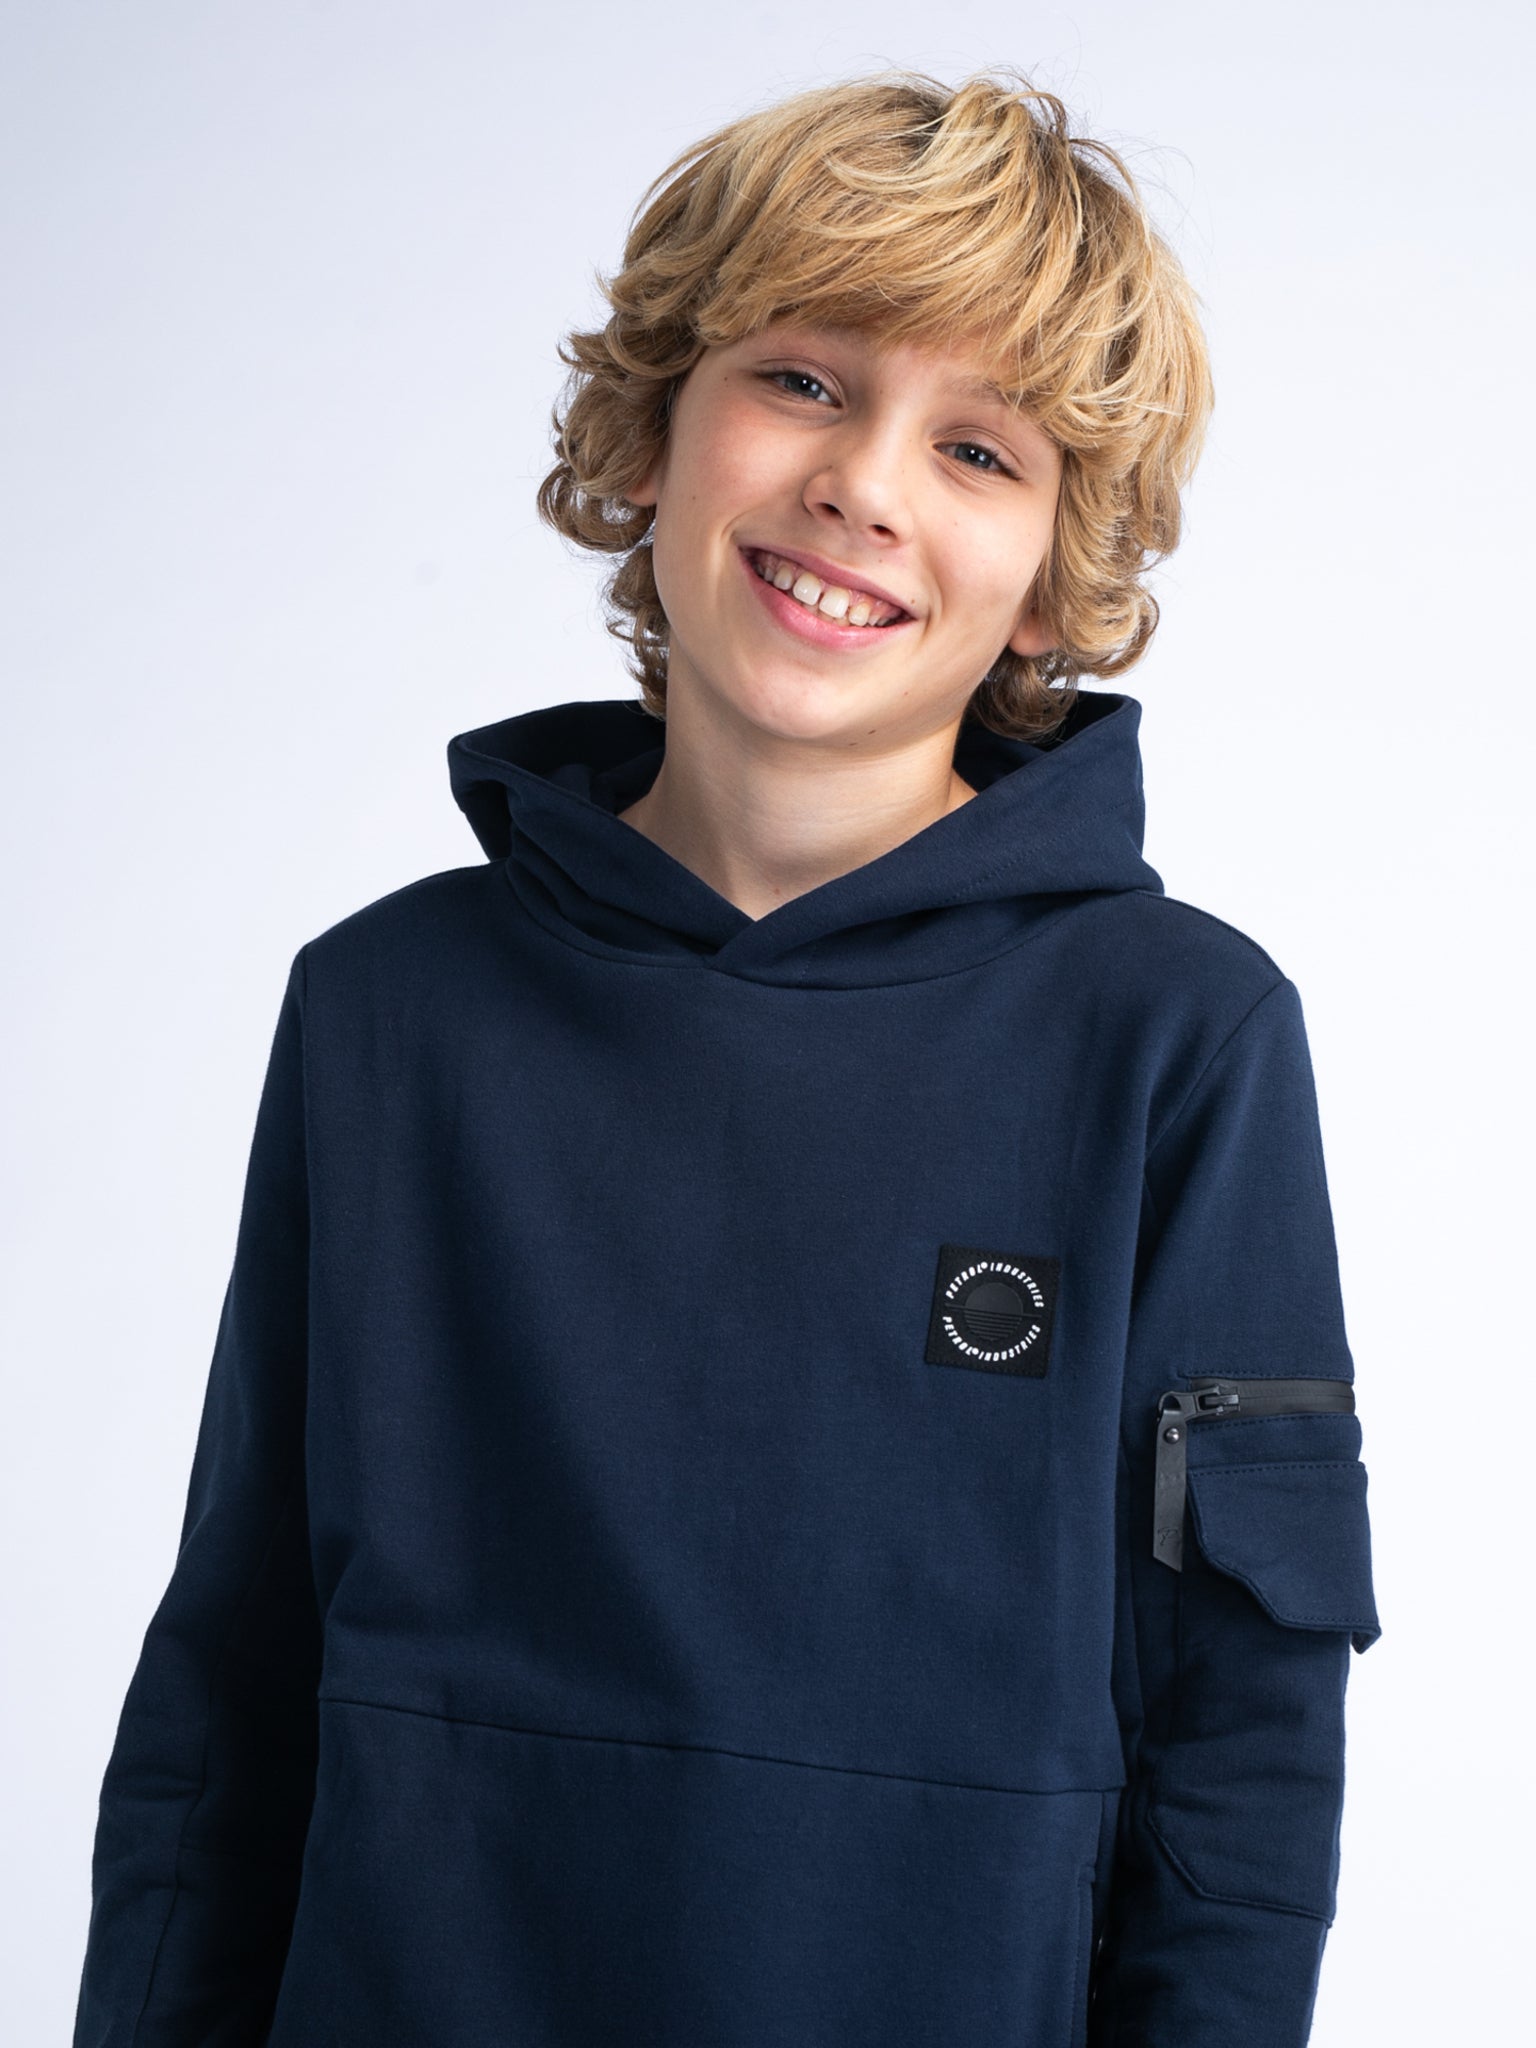 Jongens Boys Sweater Hooded van Petrol in de kleur Navy Blue in maat 176.